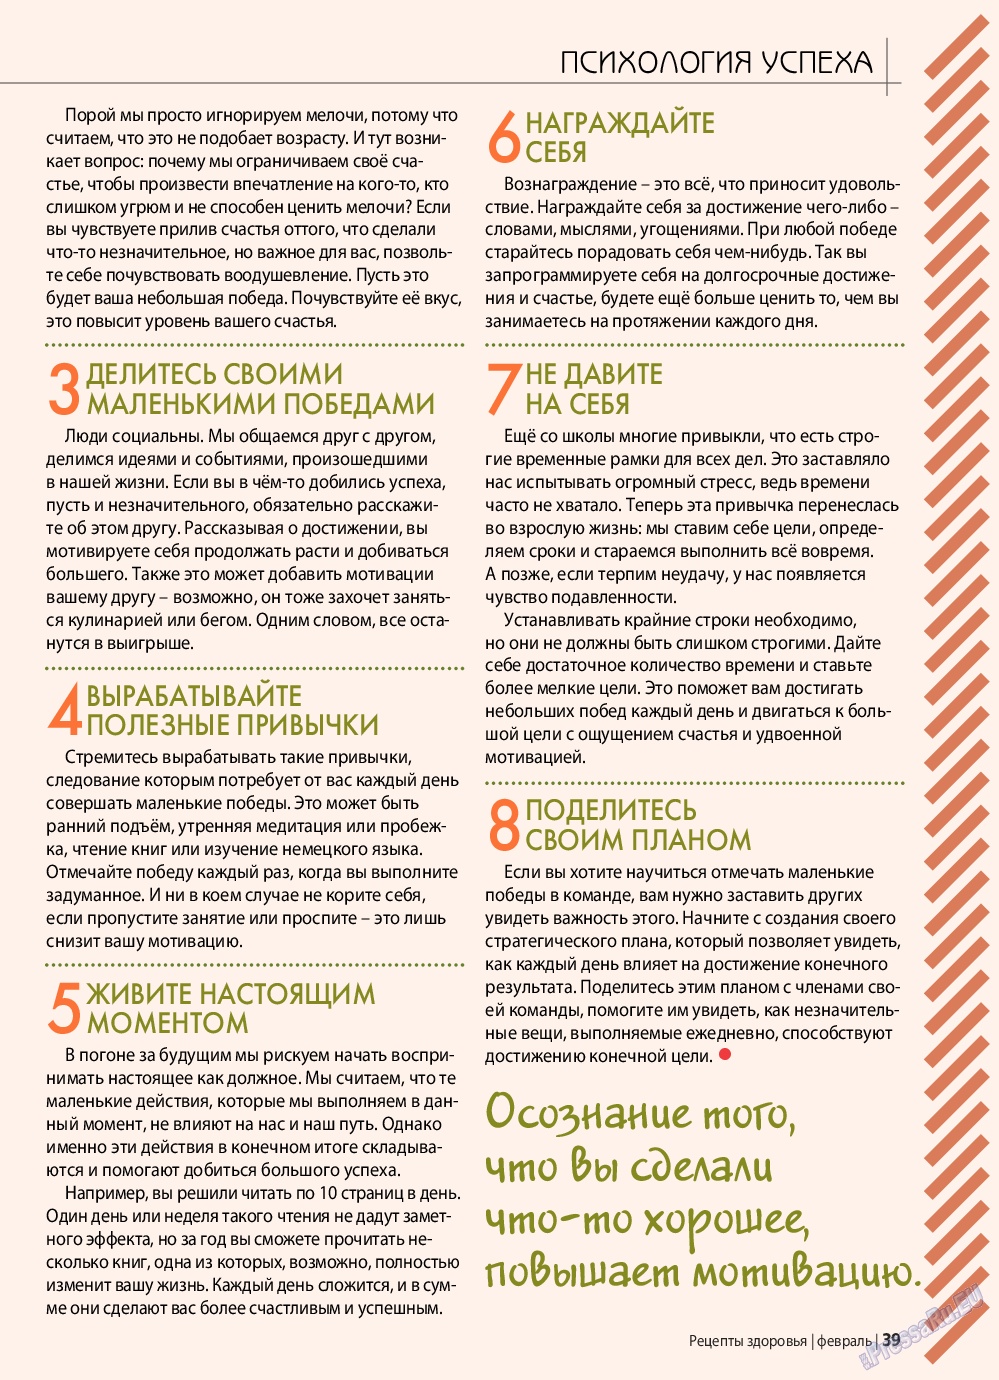 Рецепты здоровья, журнал. 2019 №117 стр.39